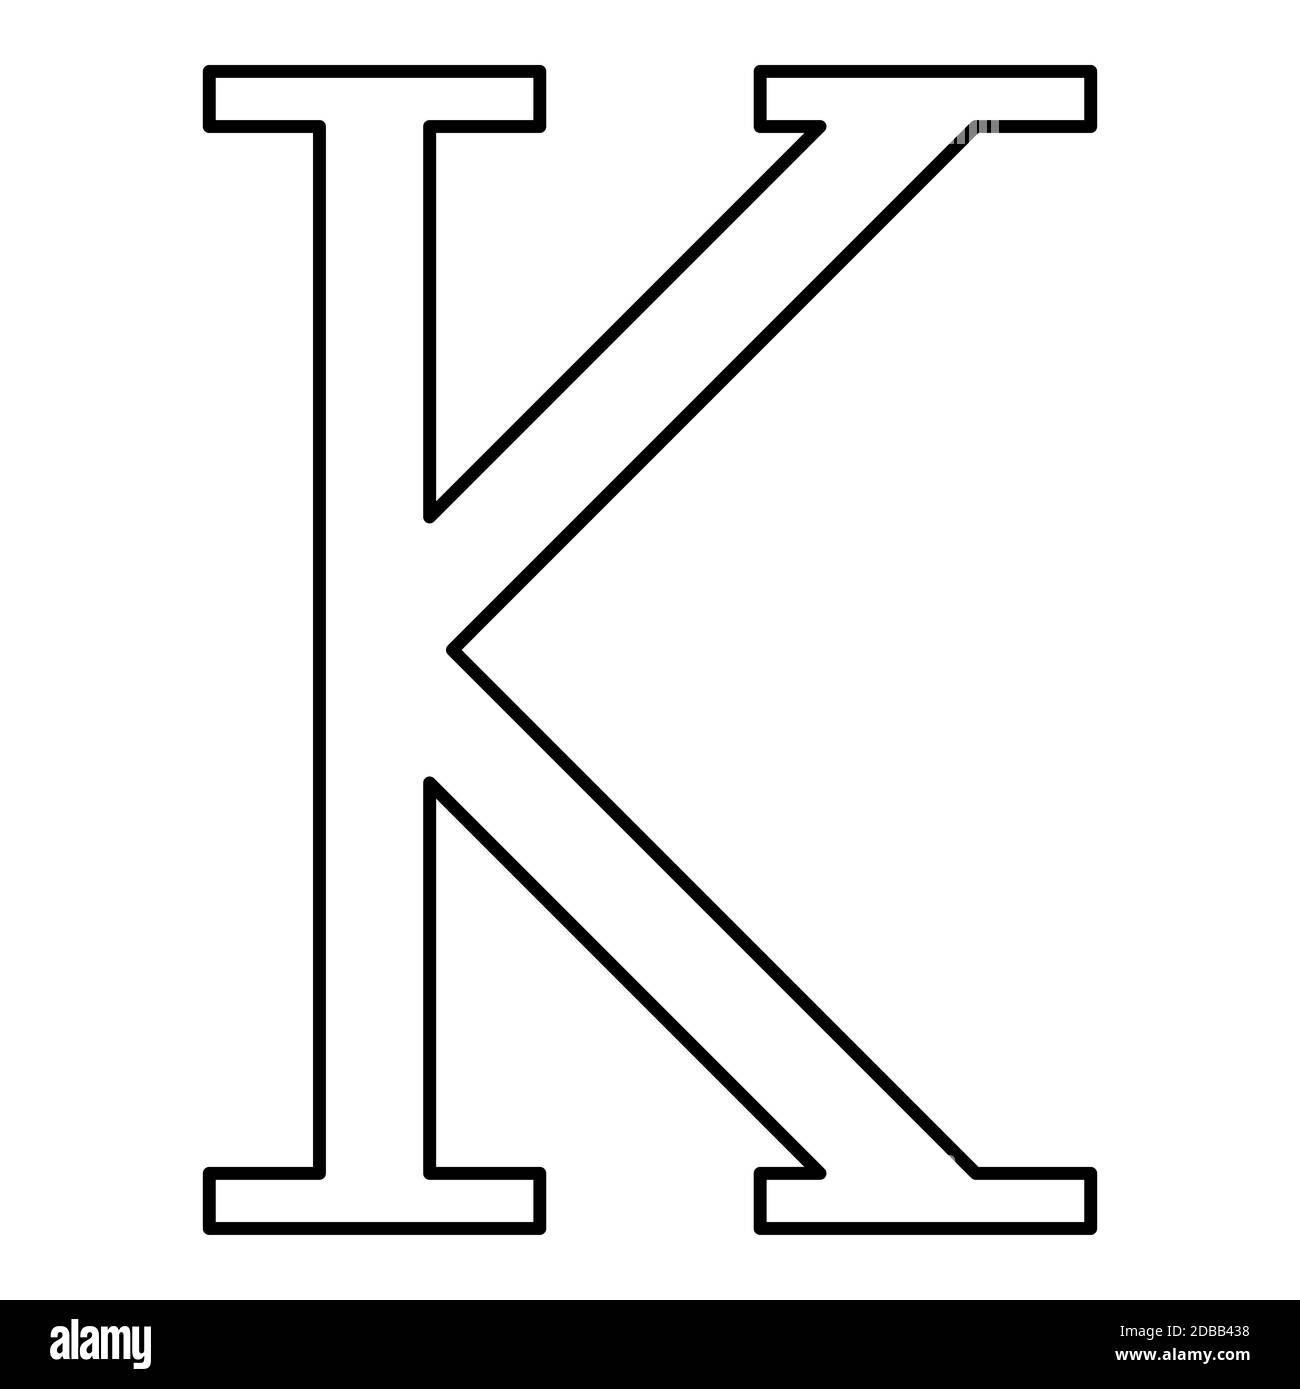 Kappa griego símbolo mayúscula letra mayúscula icono fuente contorno negro  vector ilustración plano imagen simple Fotografía de stock - Alamy